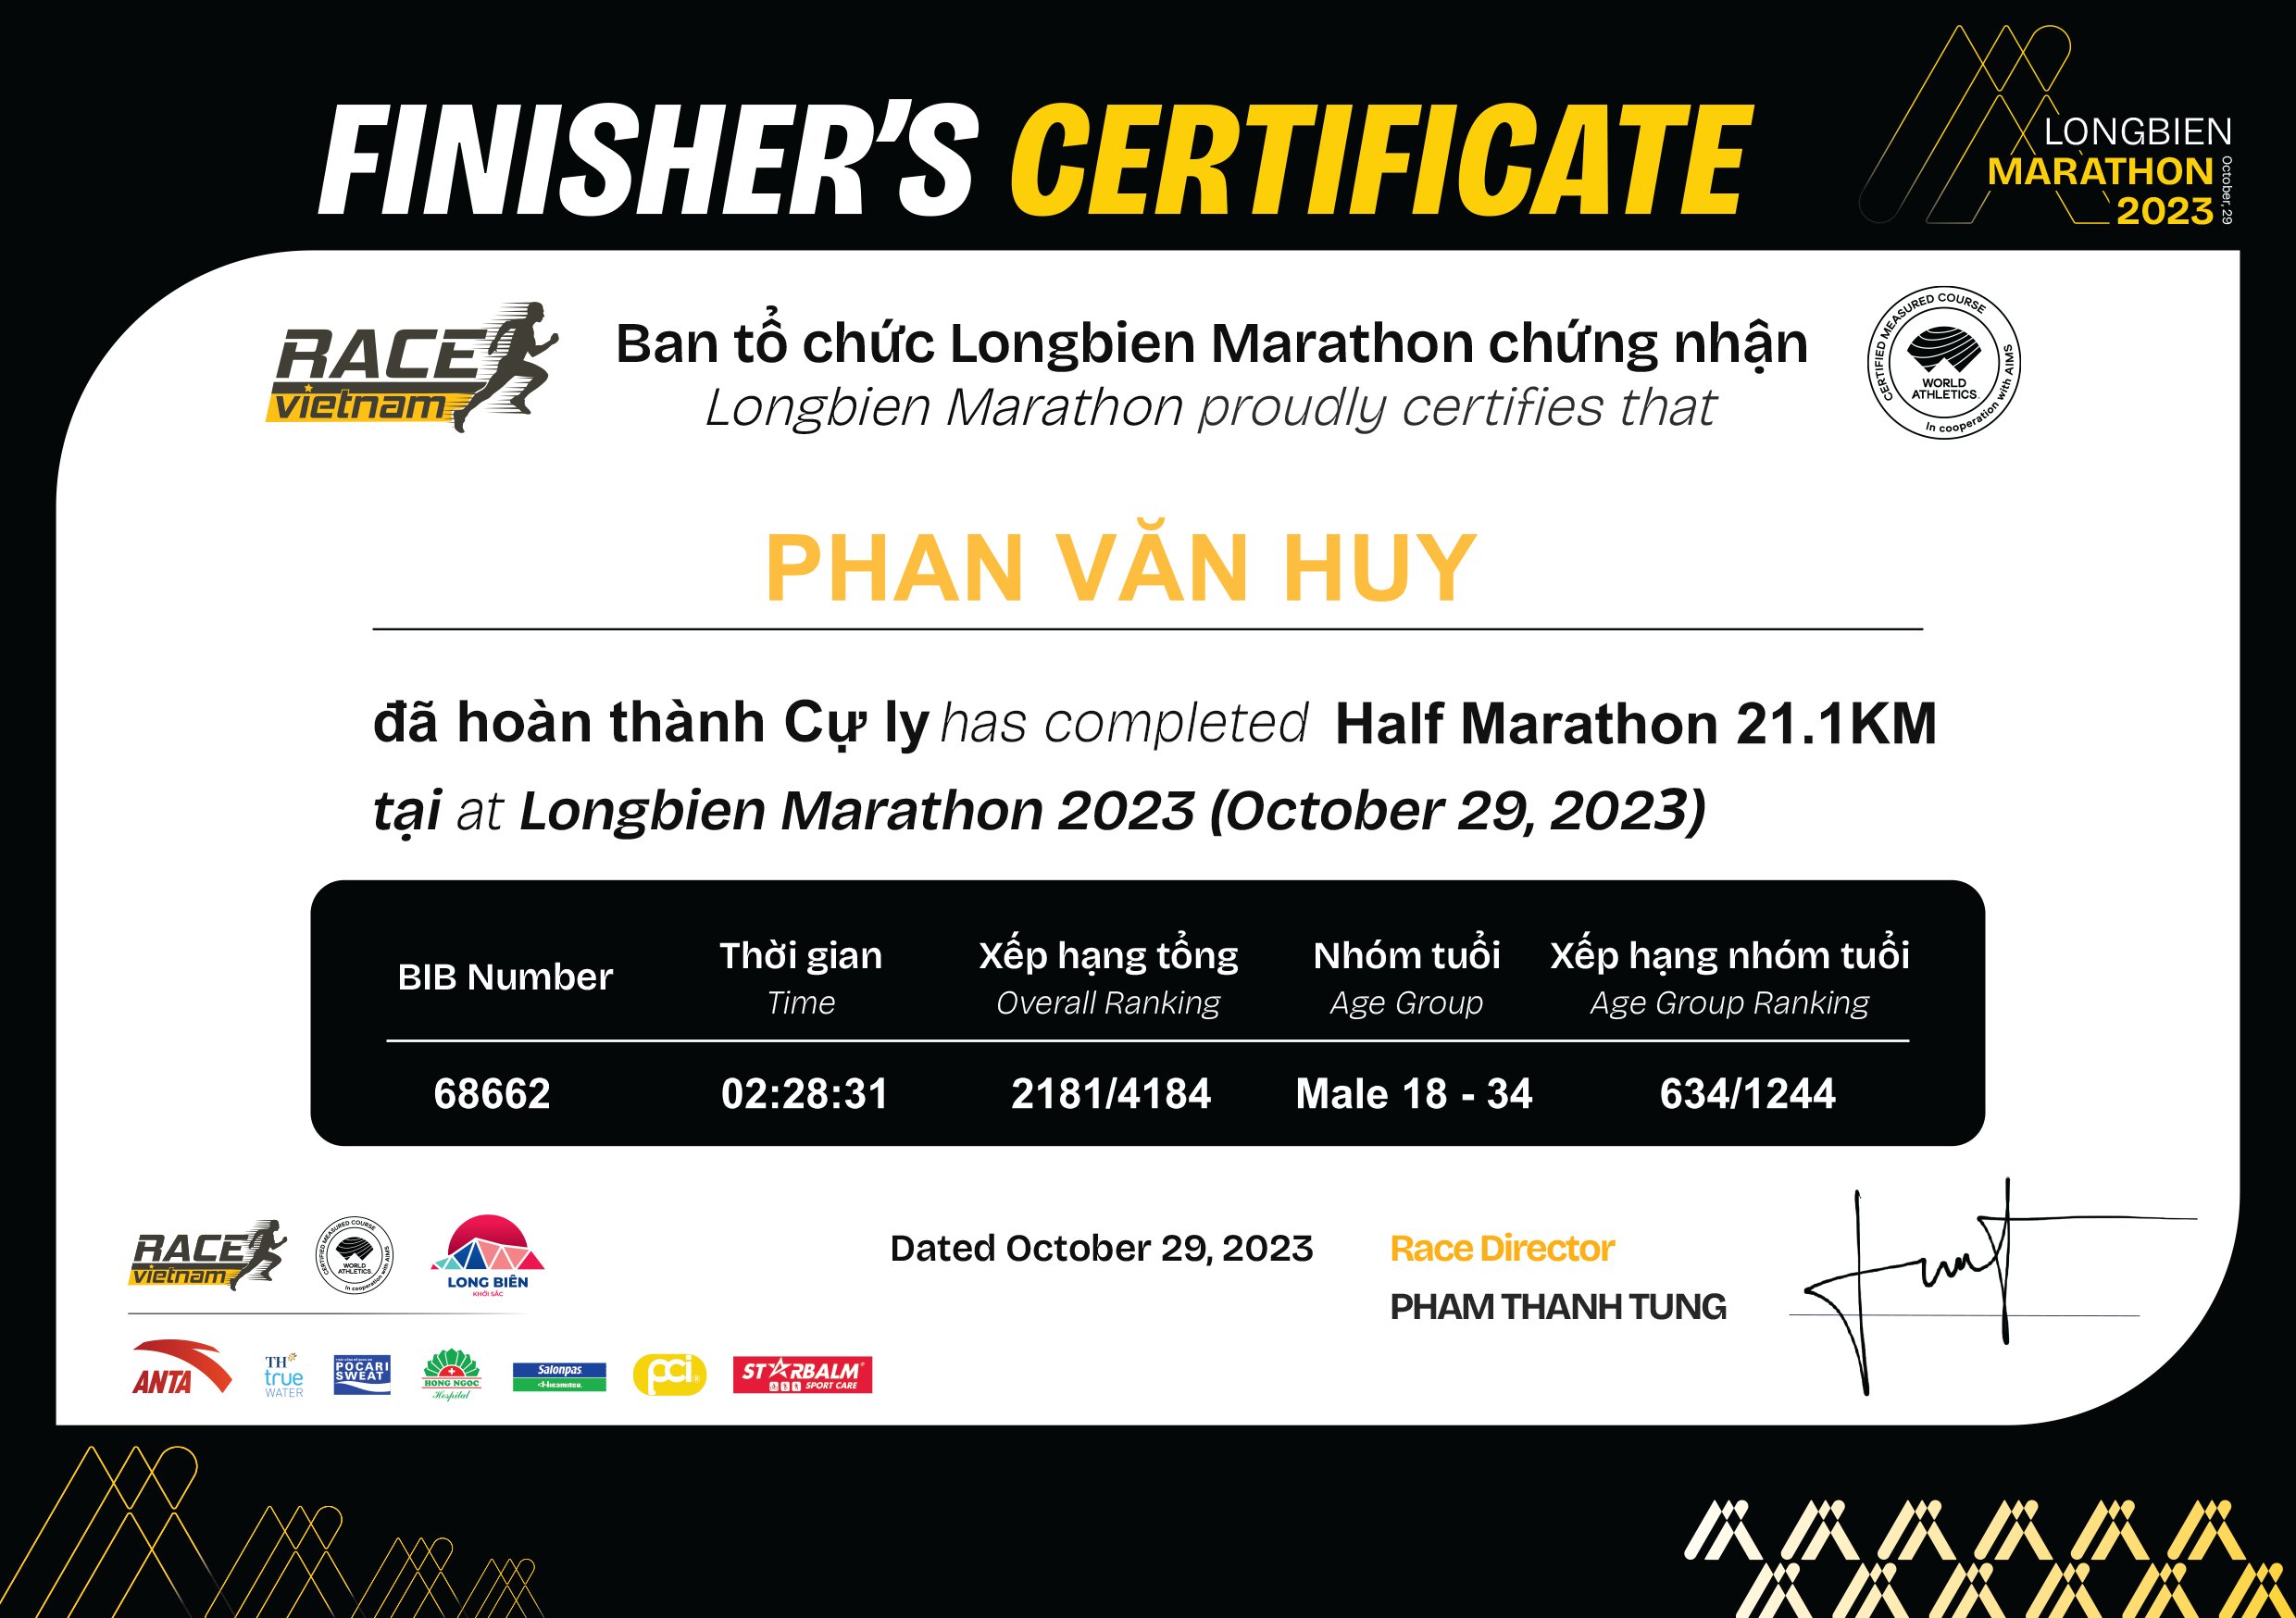 68662 - Phan Văn Huy